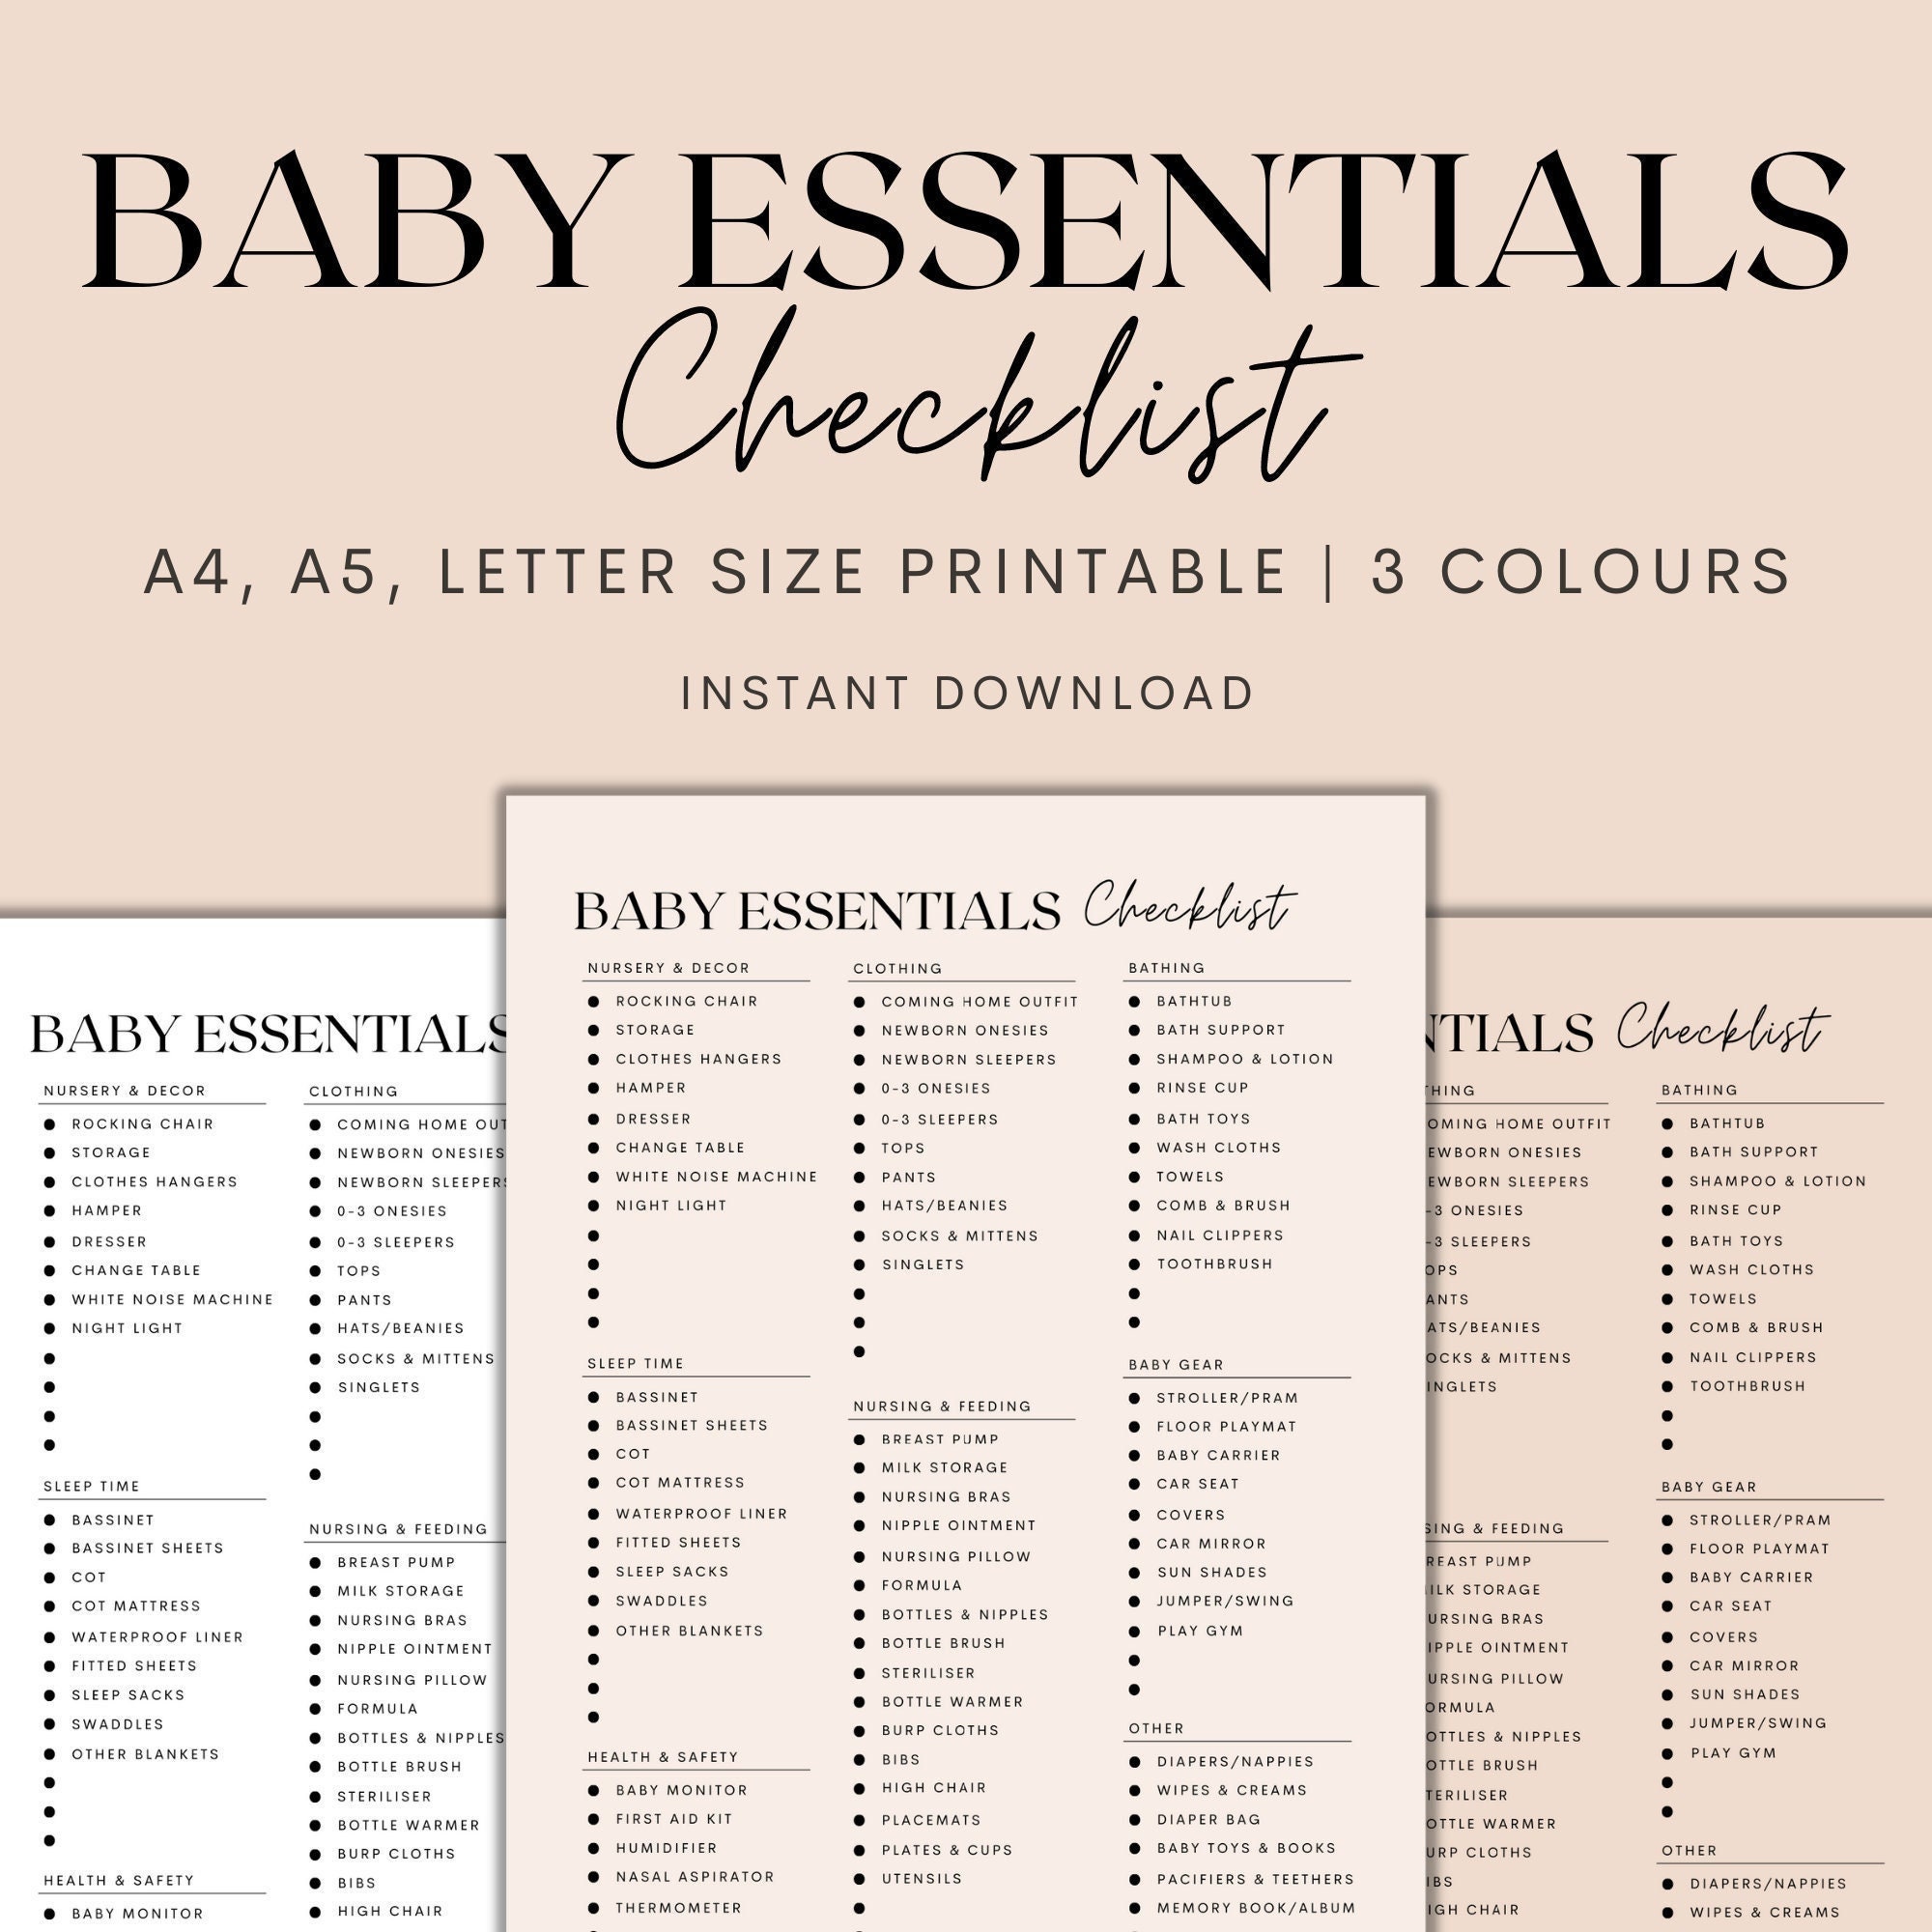 Baby Essentials Checklist Printable Newborn Checklist Etsy Uk